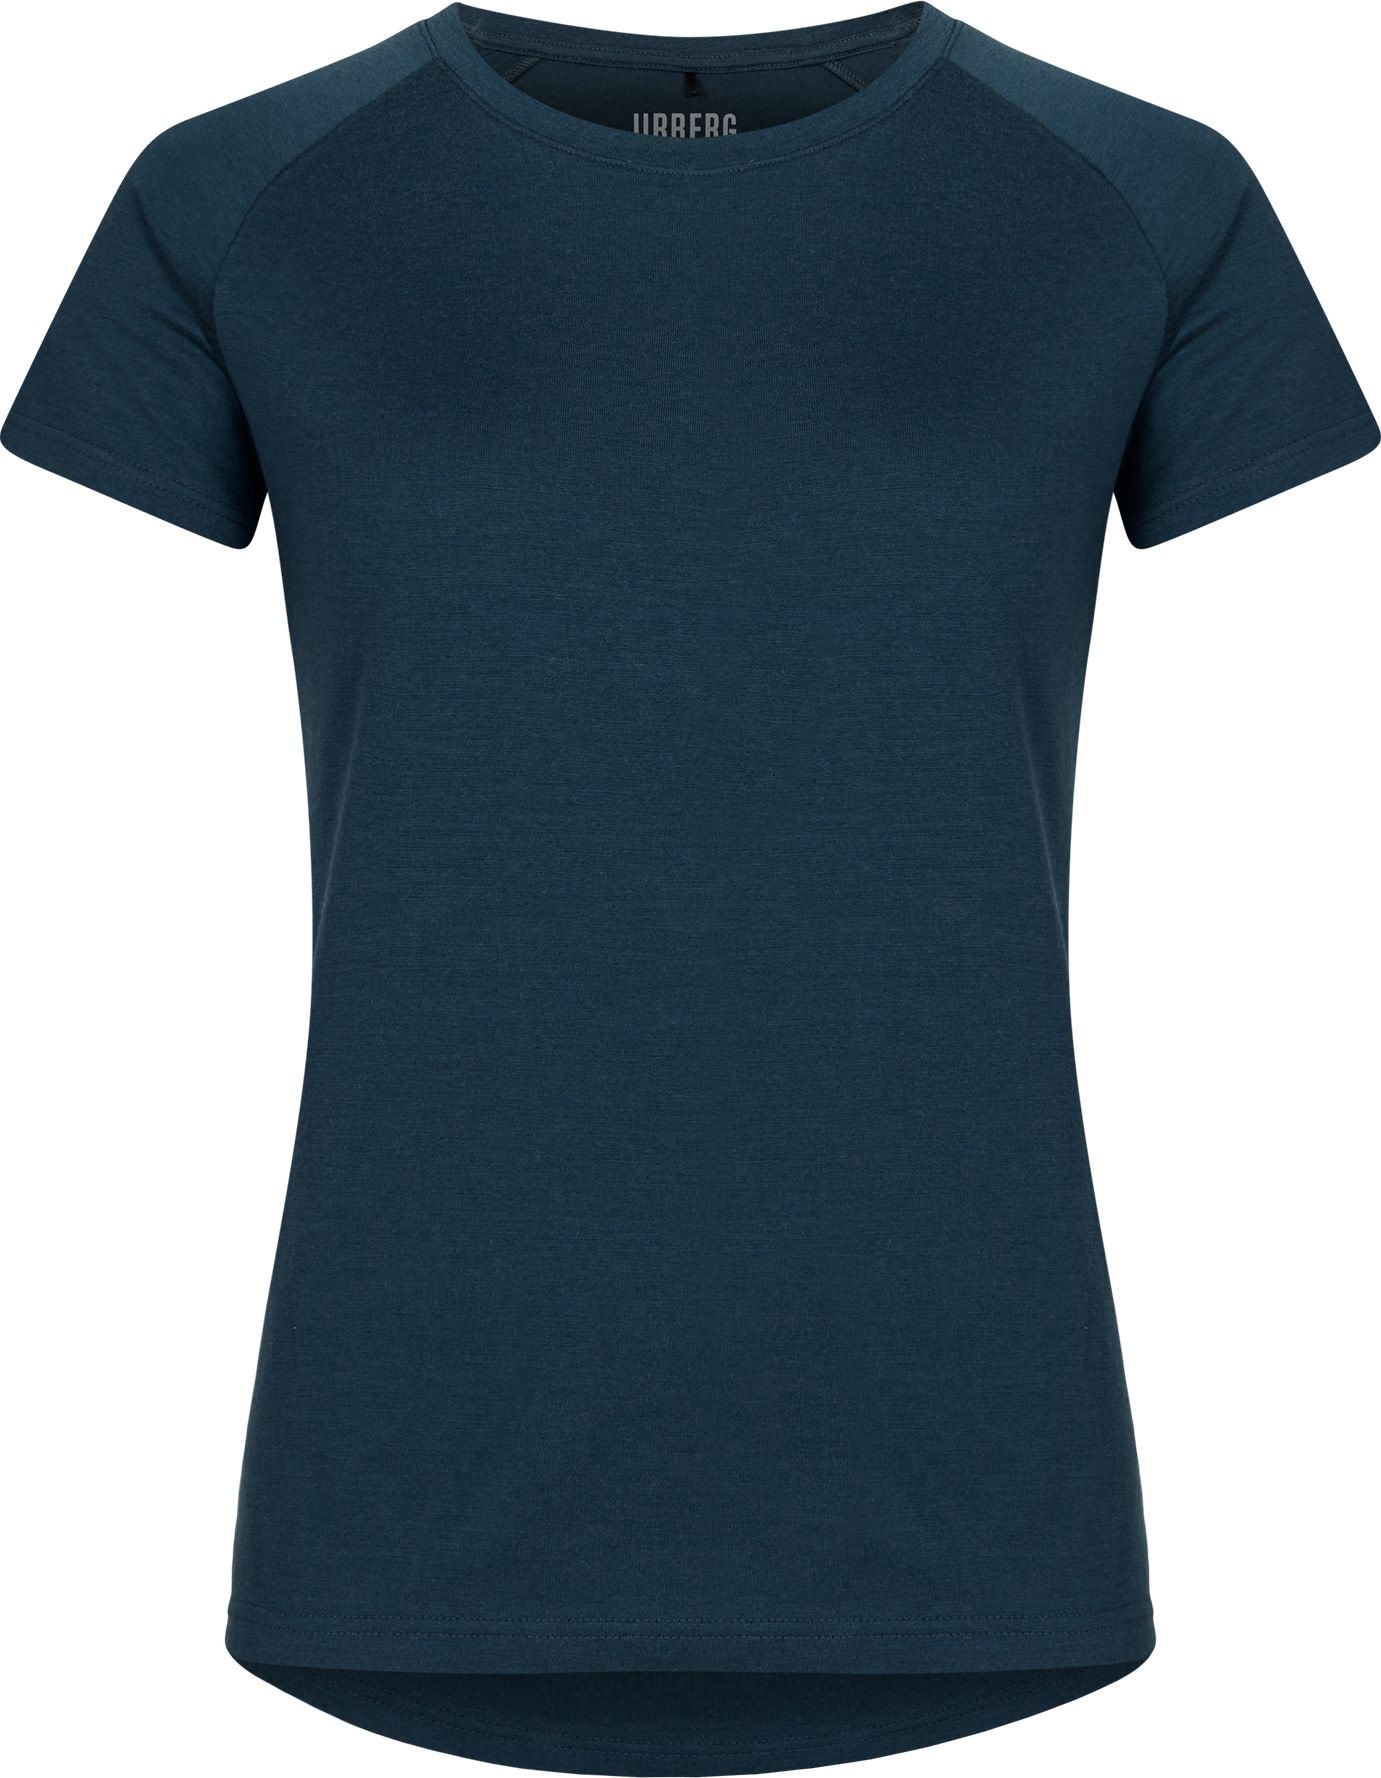 Urberg Women's Lyngen Merino T-Shirt 2.0 MidnightNavy